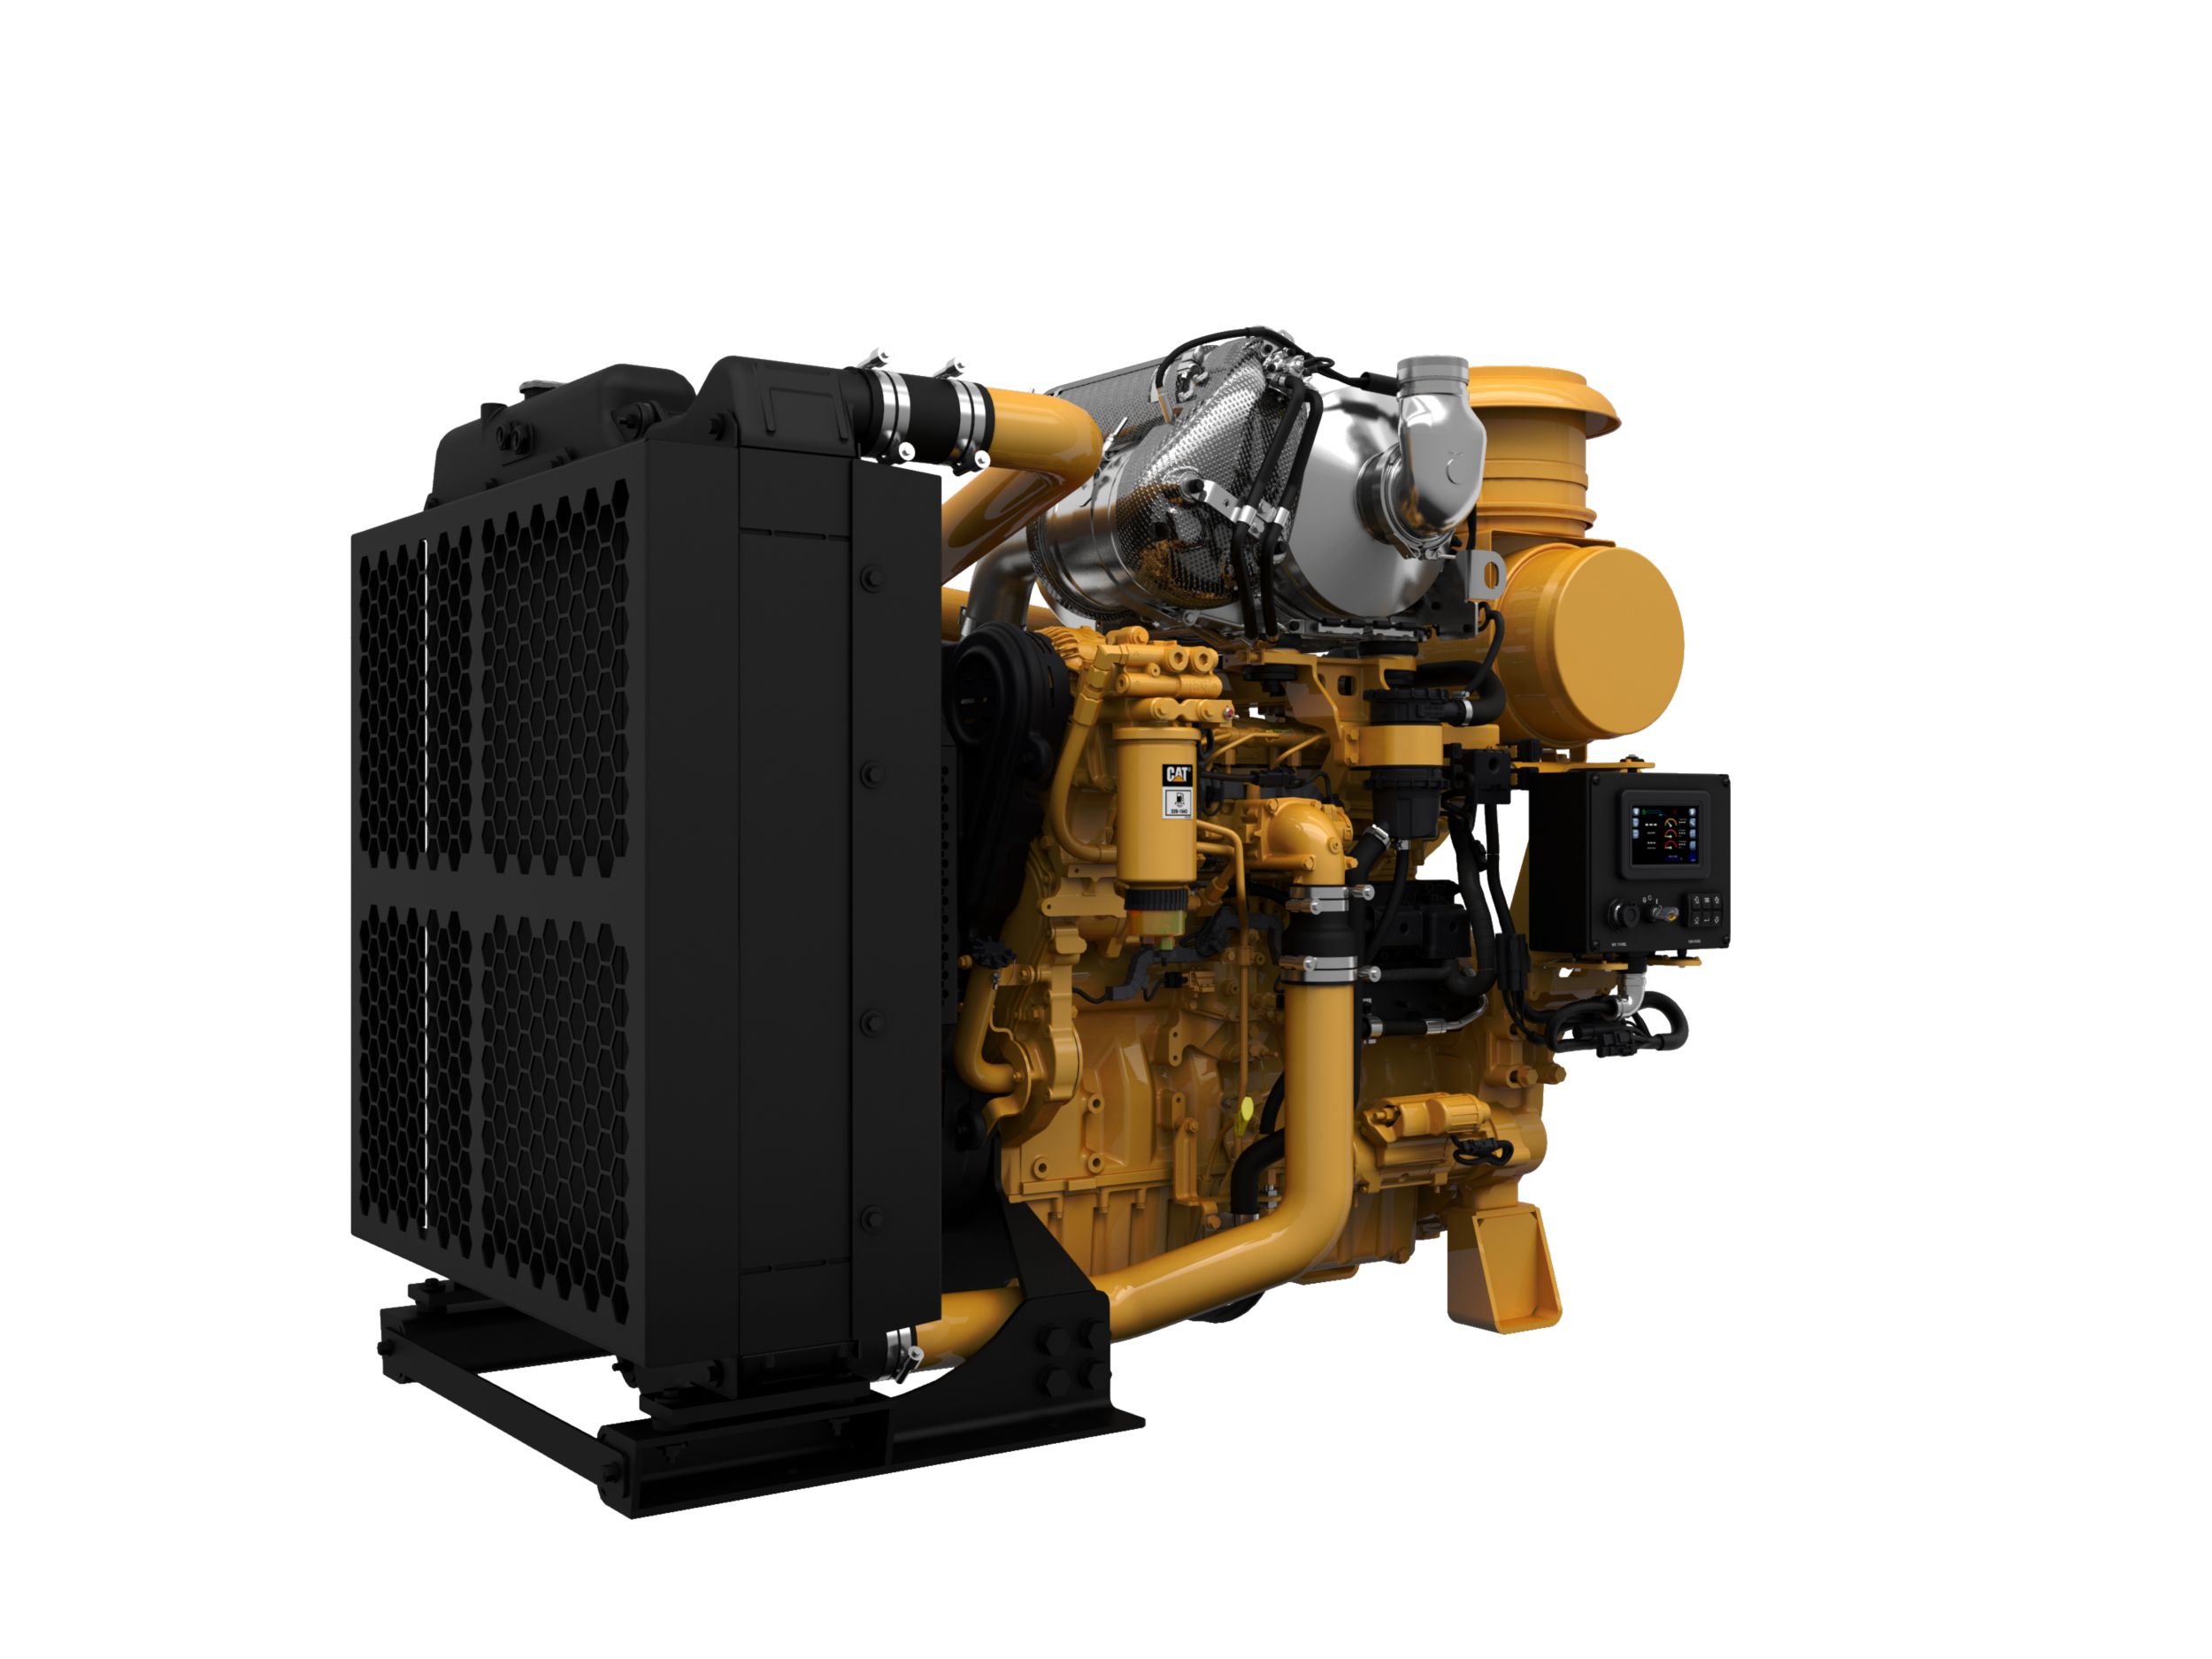 Groupe moteur industriel C9.3B, groupes moteurs diesel : pays à forte réglementation